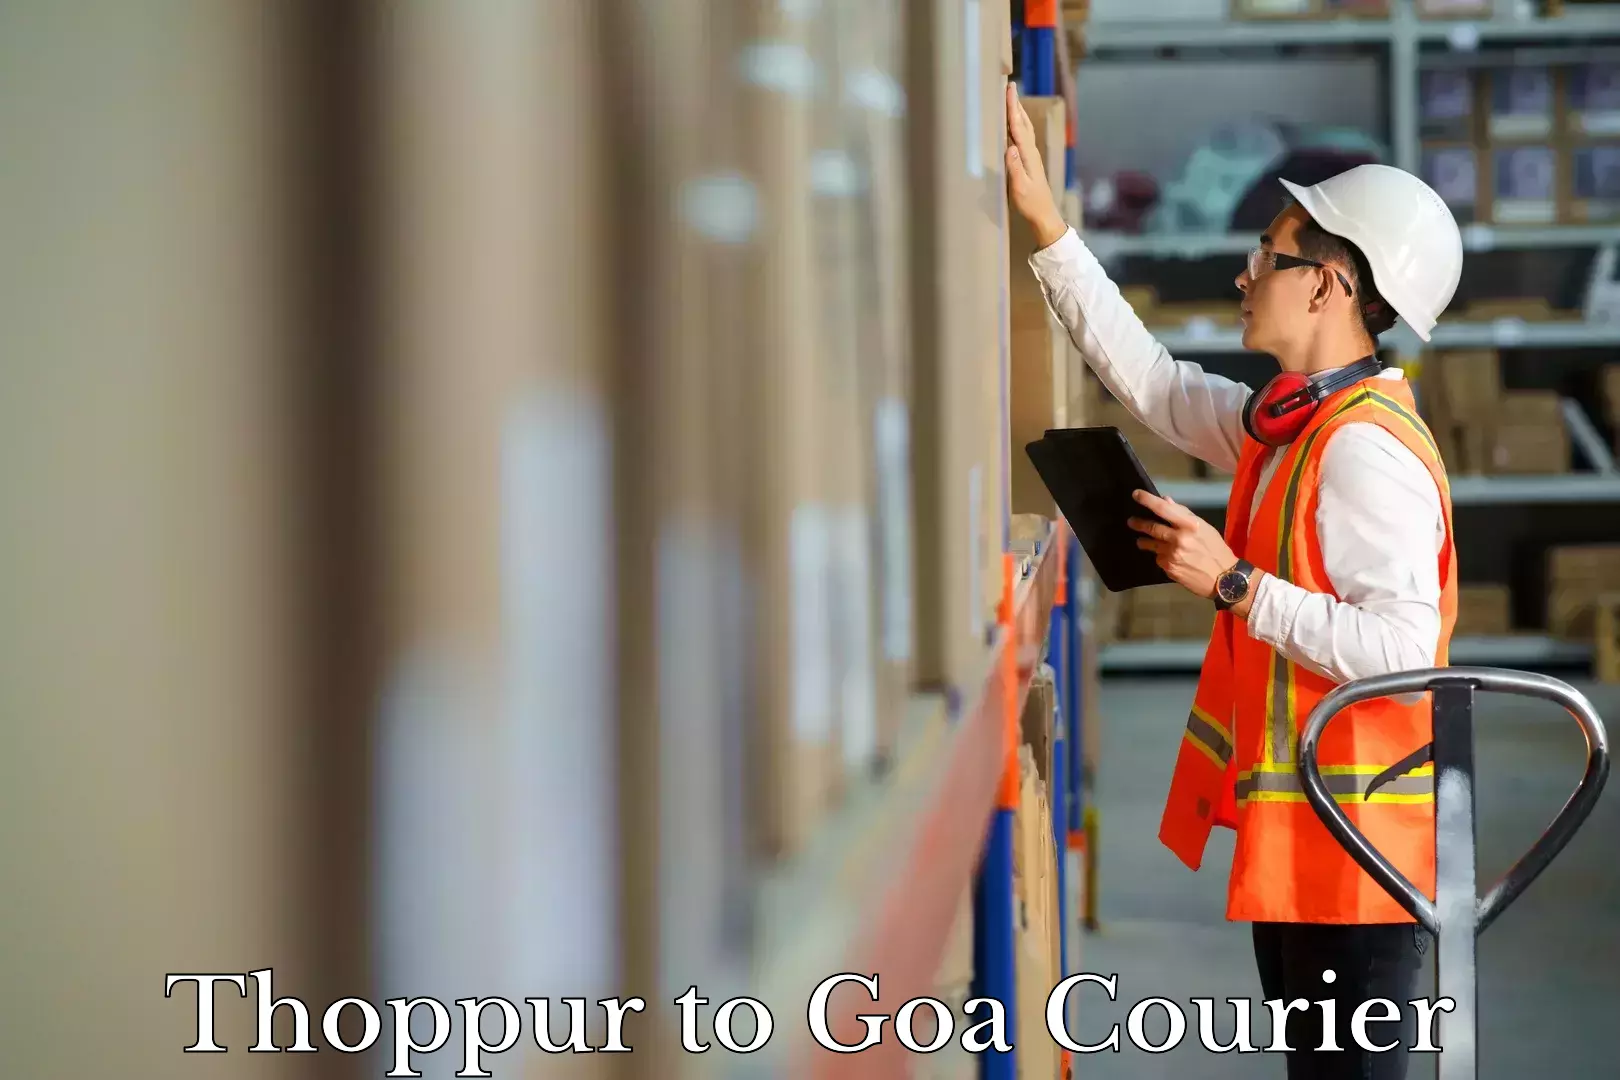 Luggage forwarding service Thoppur to Goa